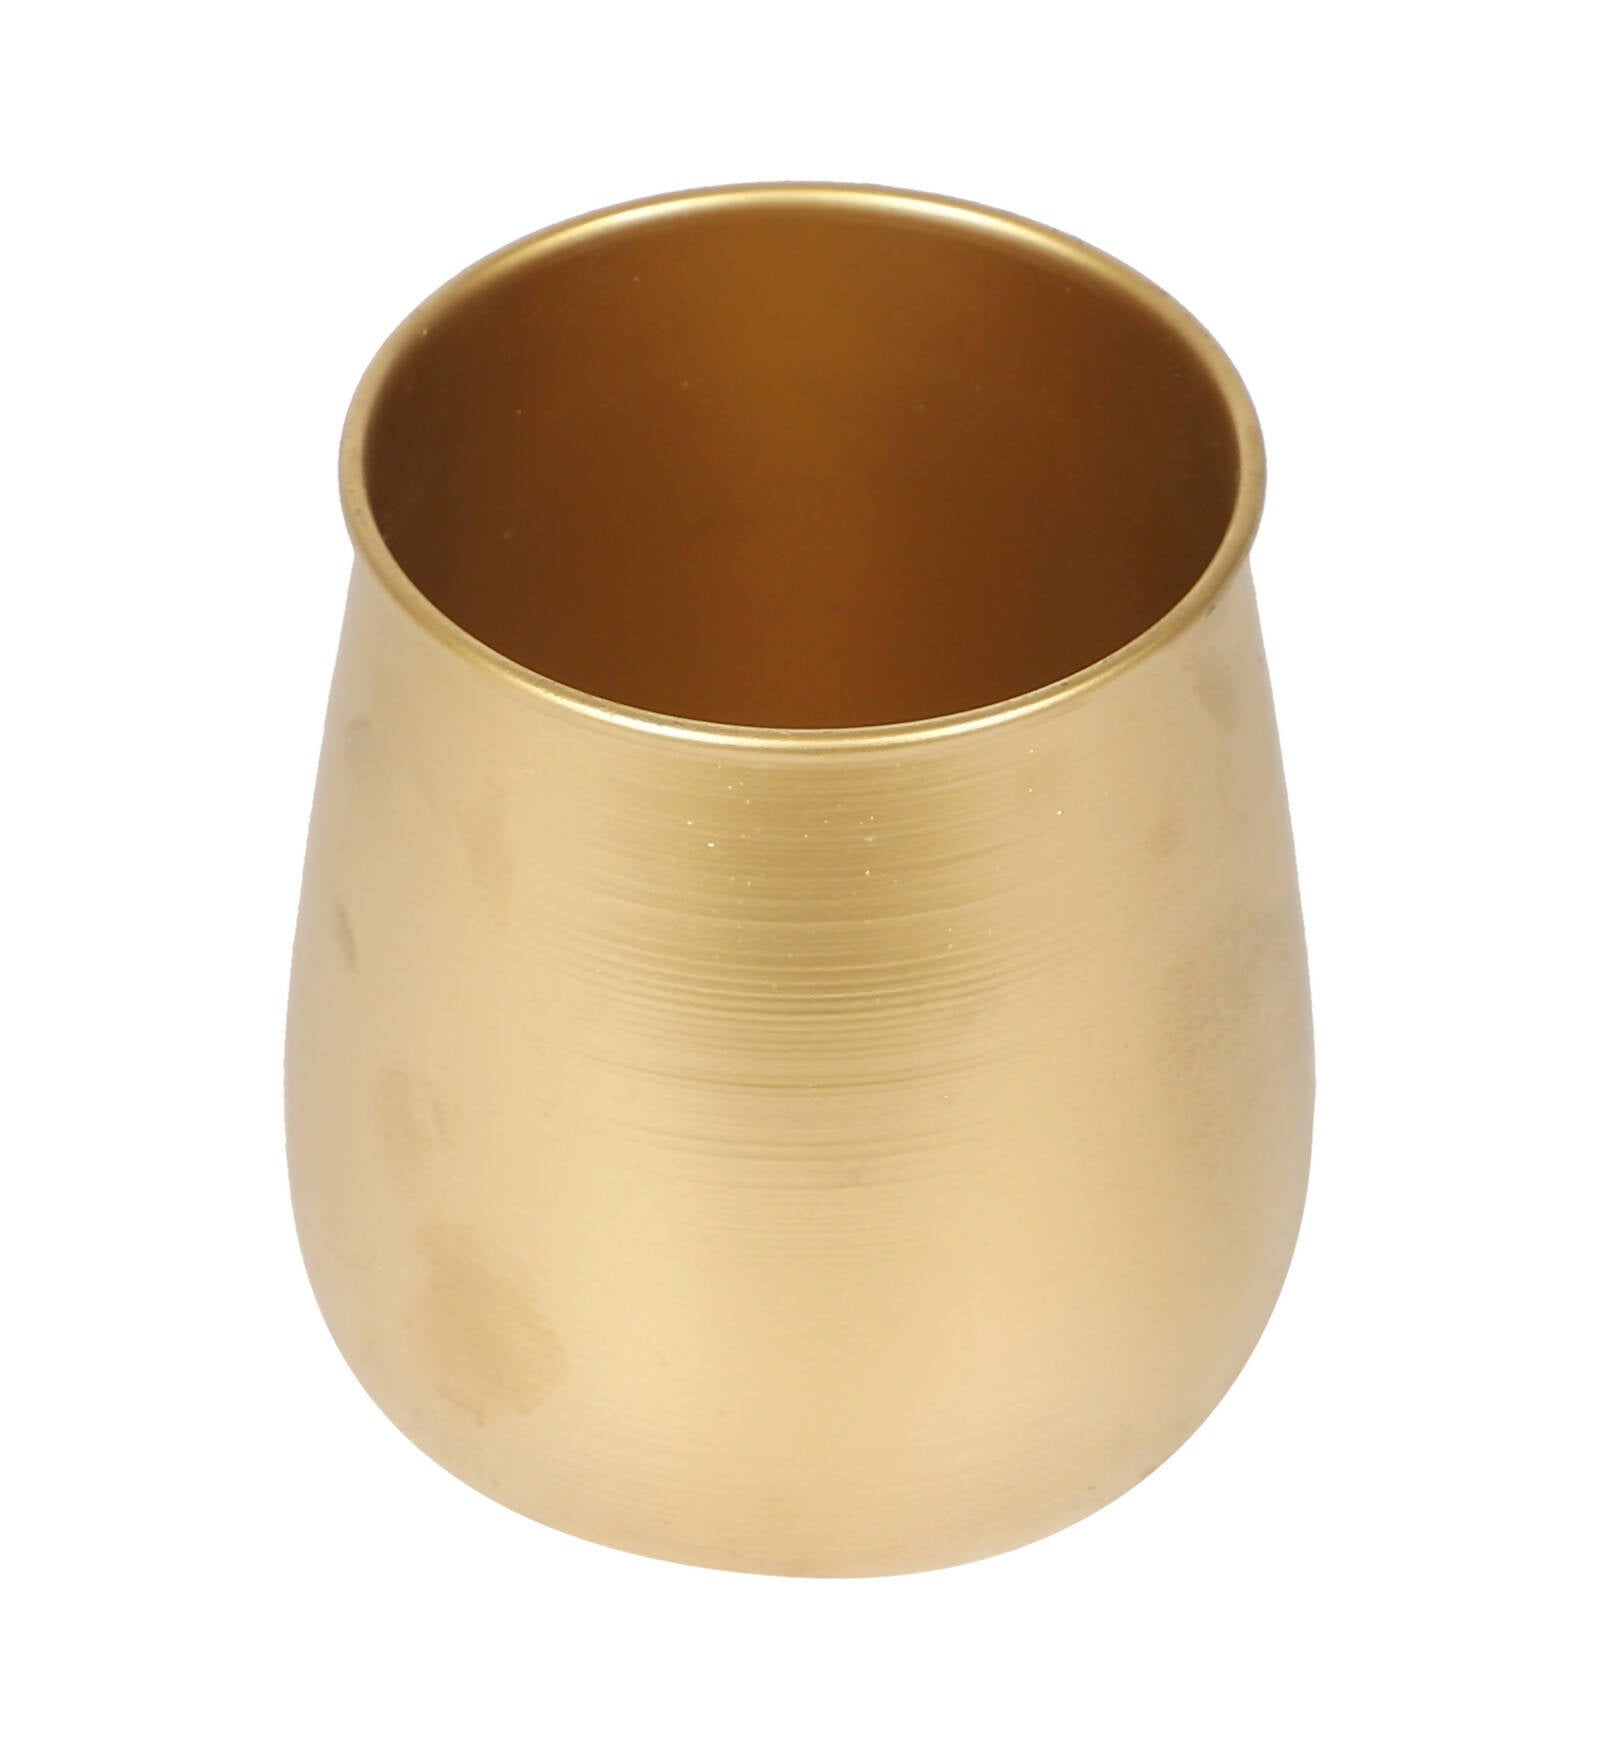 Gold Flower Pot & Wax Jar Combo Set of 3